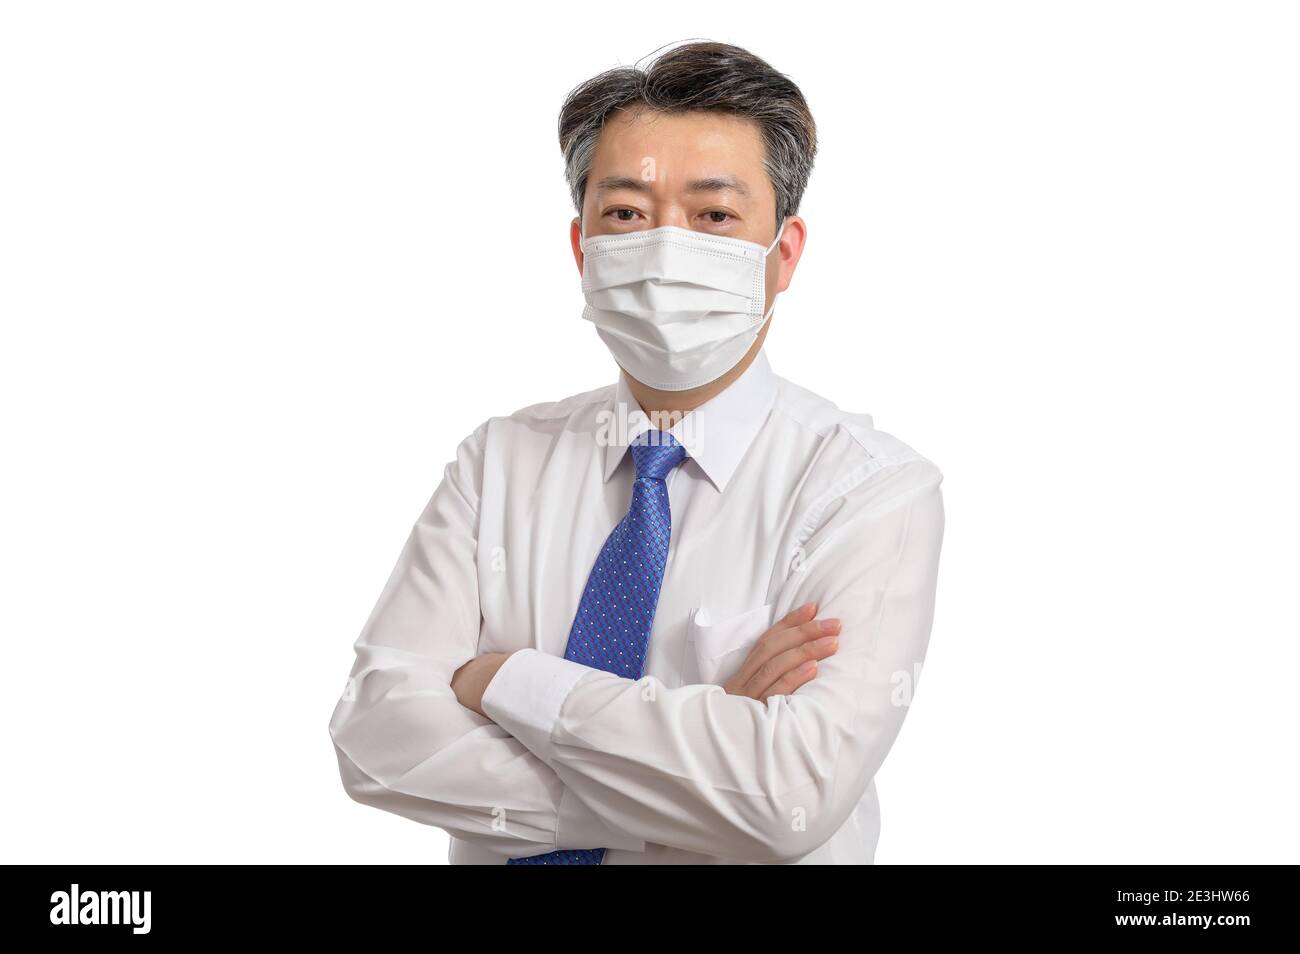 Porträt eines asiatischen Geschäftsmannes mittleren Alters mit weißer Gesichtsmaske. Weißer Hintergrund. Covid19, Gesundheit und Geschäftskonzepte. Stockfoto